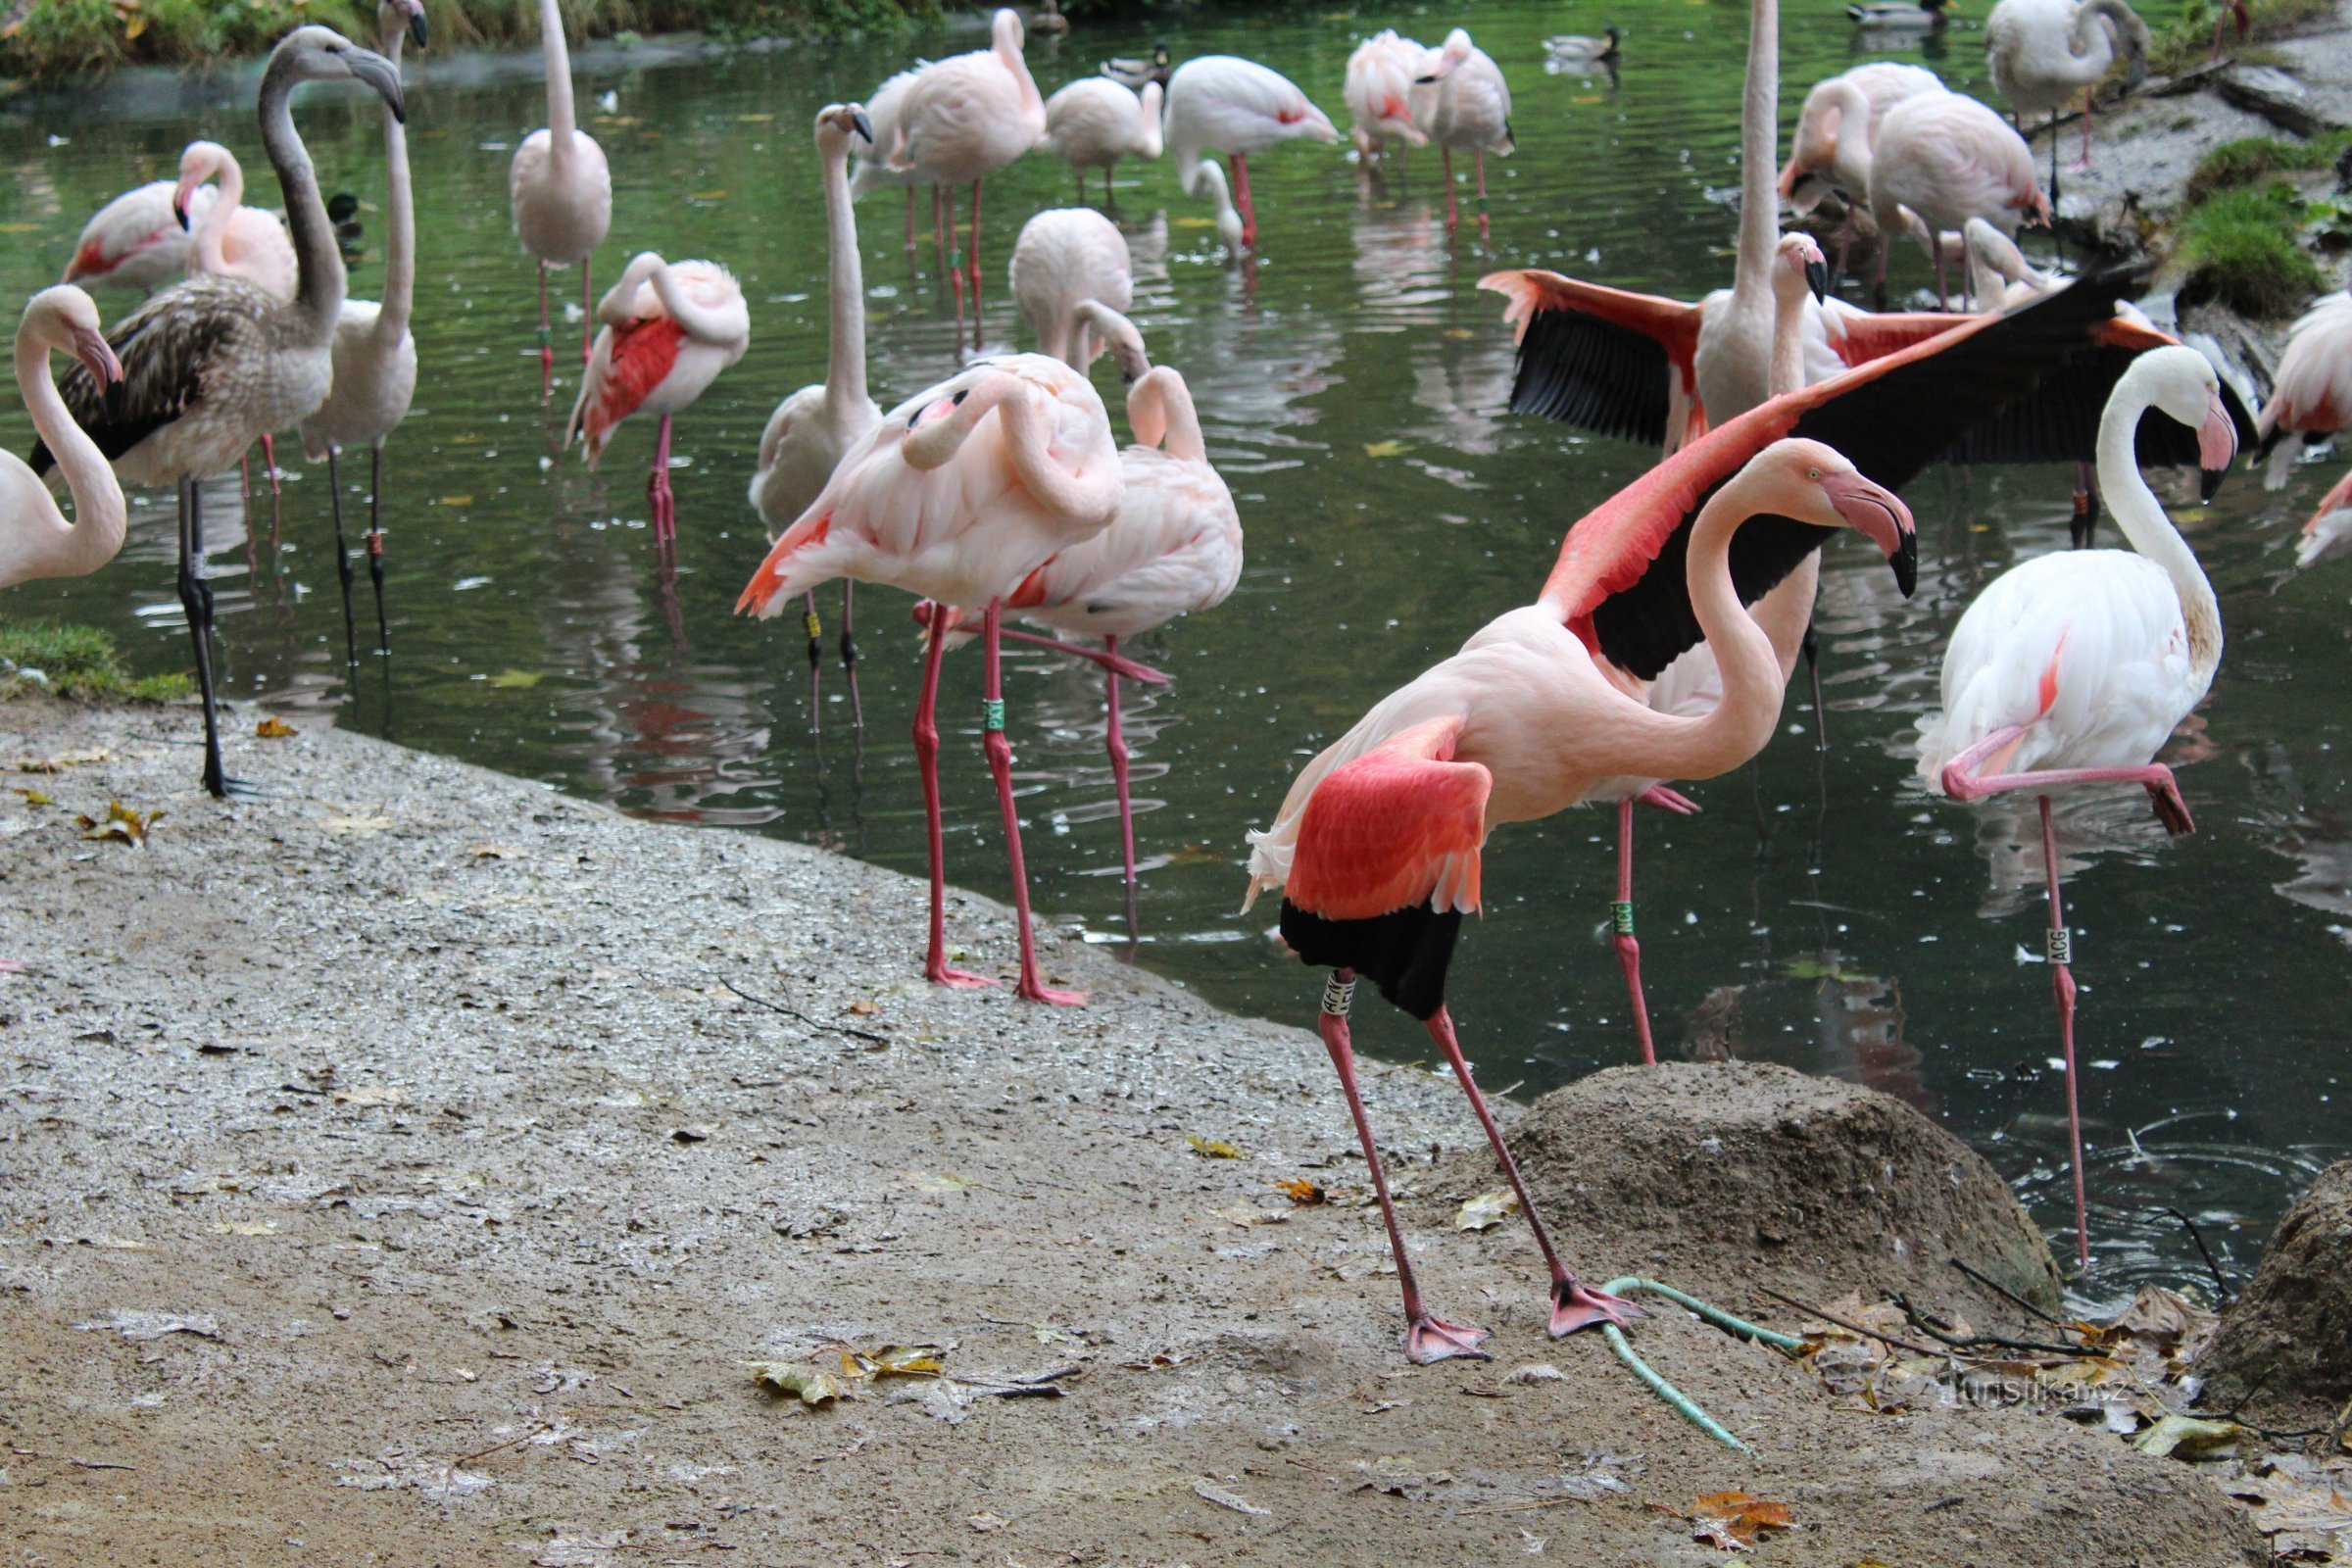 Flamingos - die anmutigen Bewegungen dieser gefiederten Tiere wirken beruhigend.